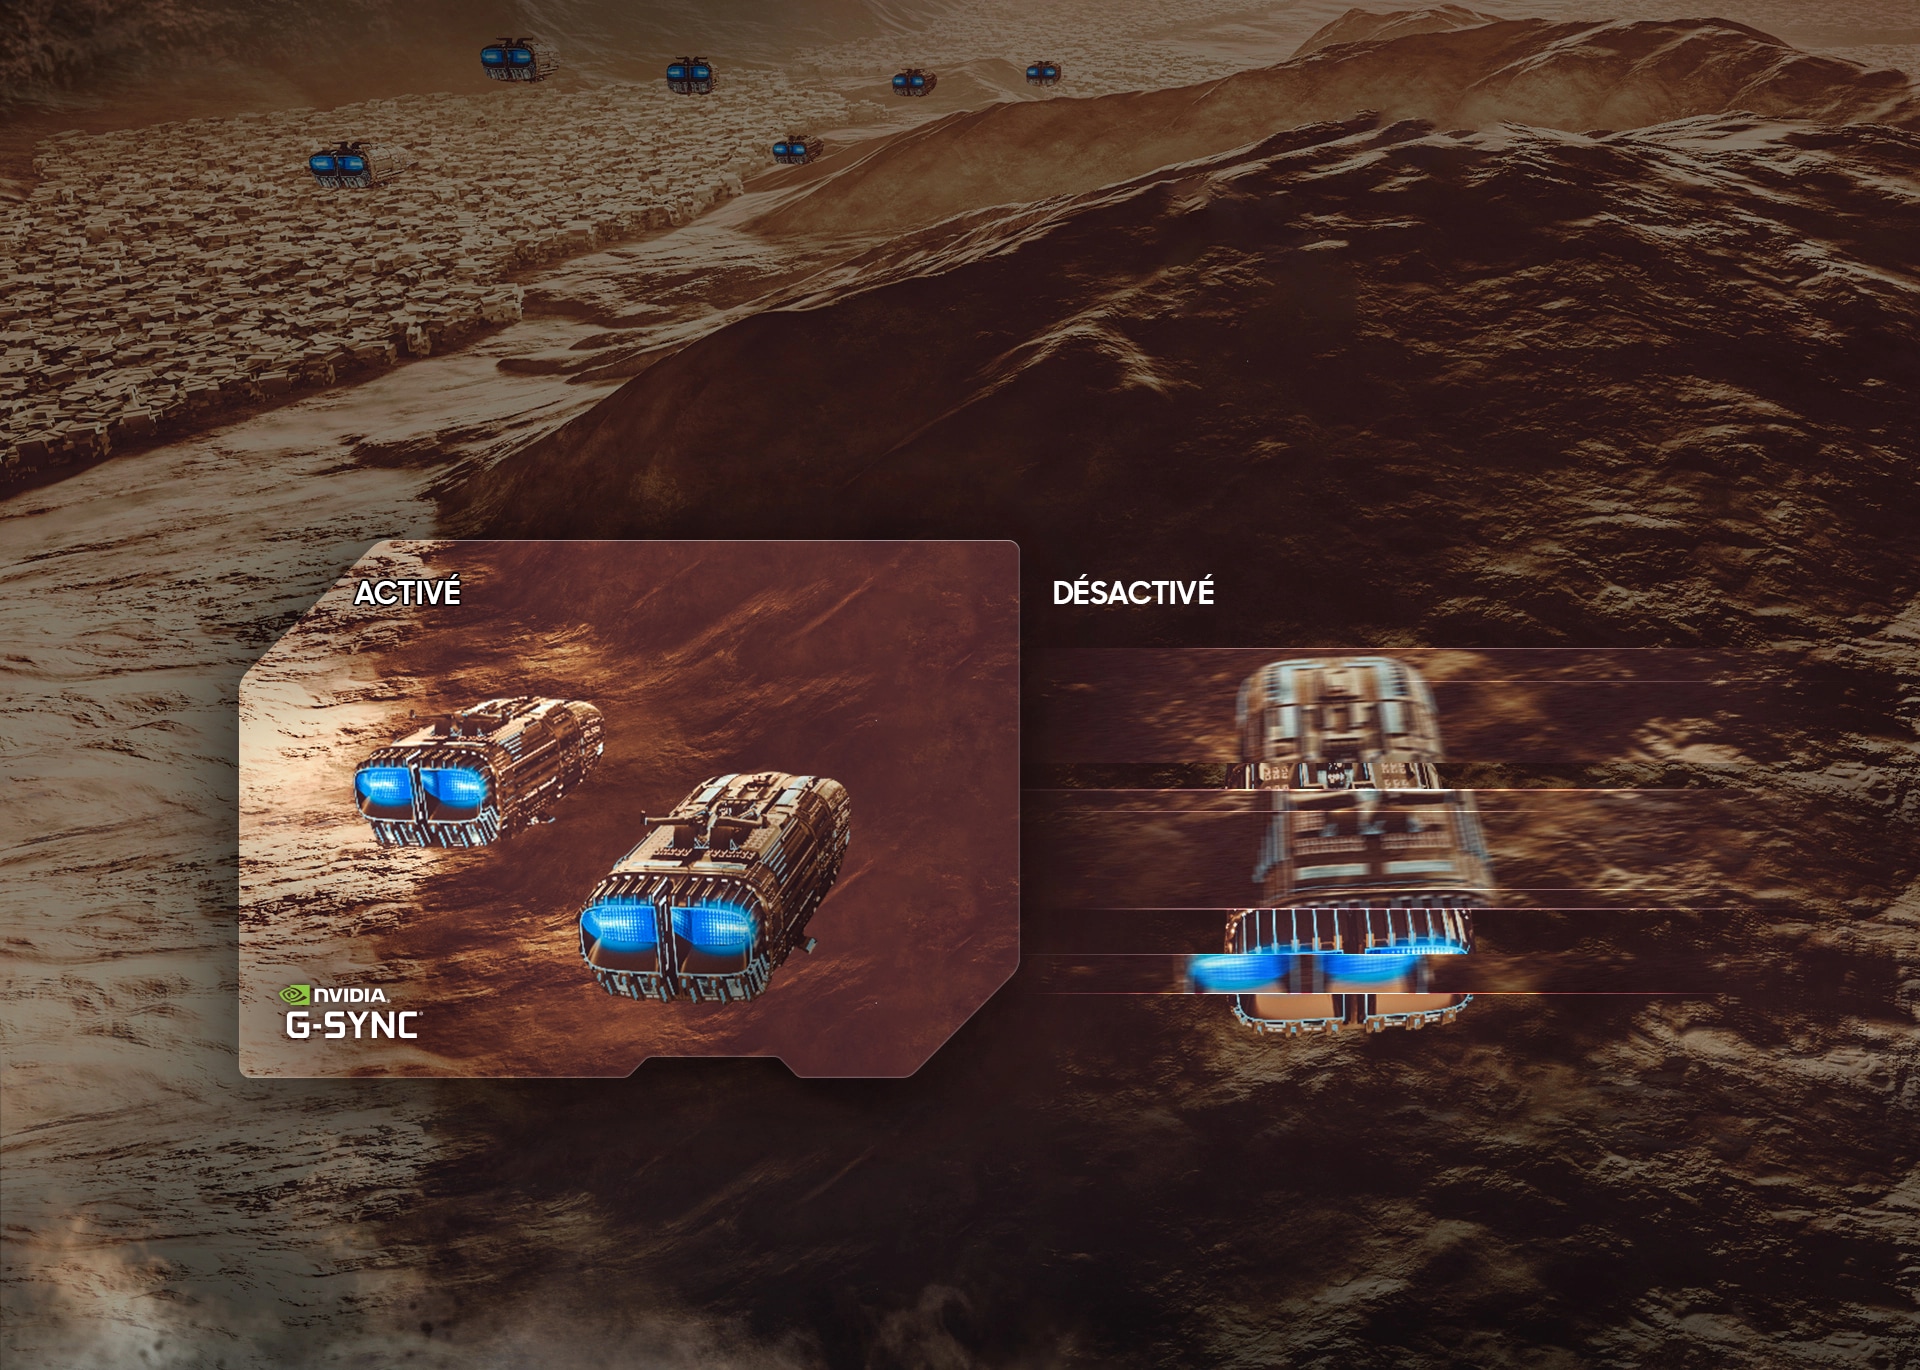 Trois vaisseaux spatiaux avec lumière néon bleue émise de l’arrière volent au-dessus d’un terrain rocheux. Les deux vaisseaux à gauche apparaissent bien définis et le mot « ON » apparaît au-dessus et le logo « NVIDIA G-SYNC » apparaît en dessous. Le vaisseau de droite apparaît déconnecté et le mot « OFF » apparaît au-dessus.